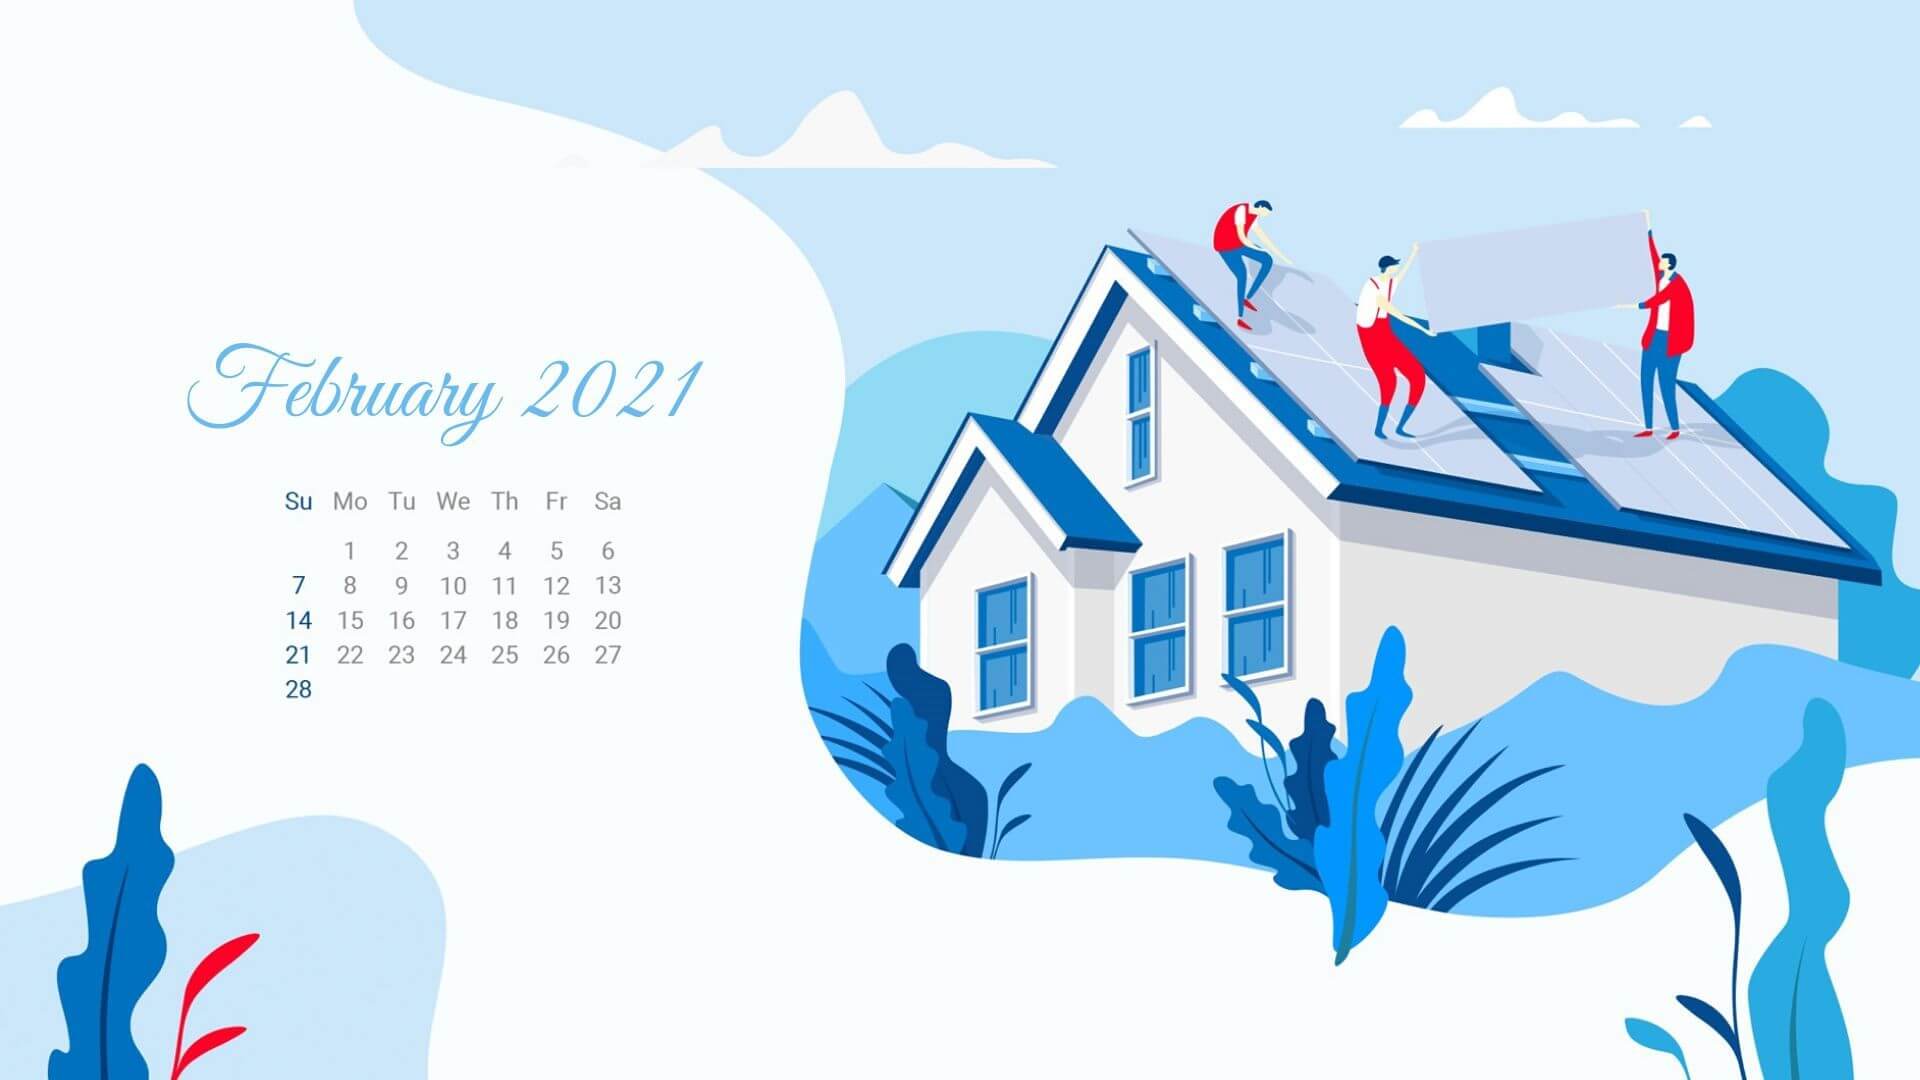 February 2021 Calendar Wallpaper For Desktop